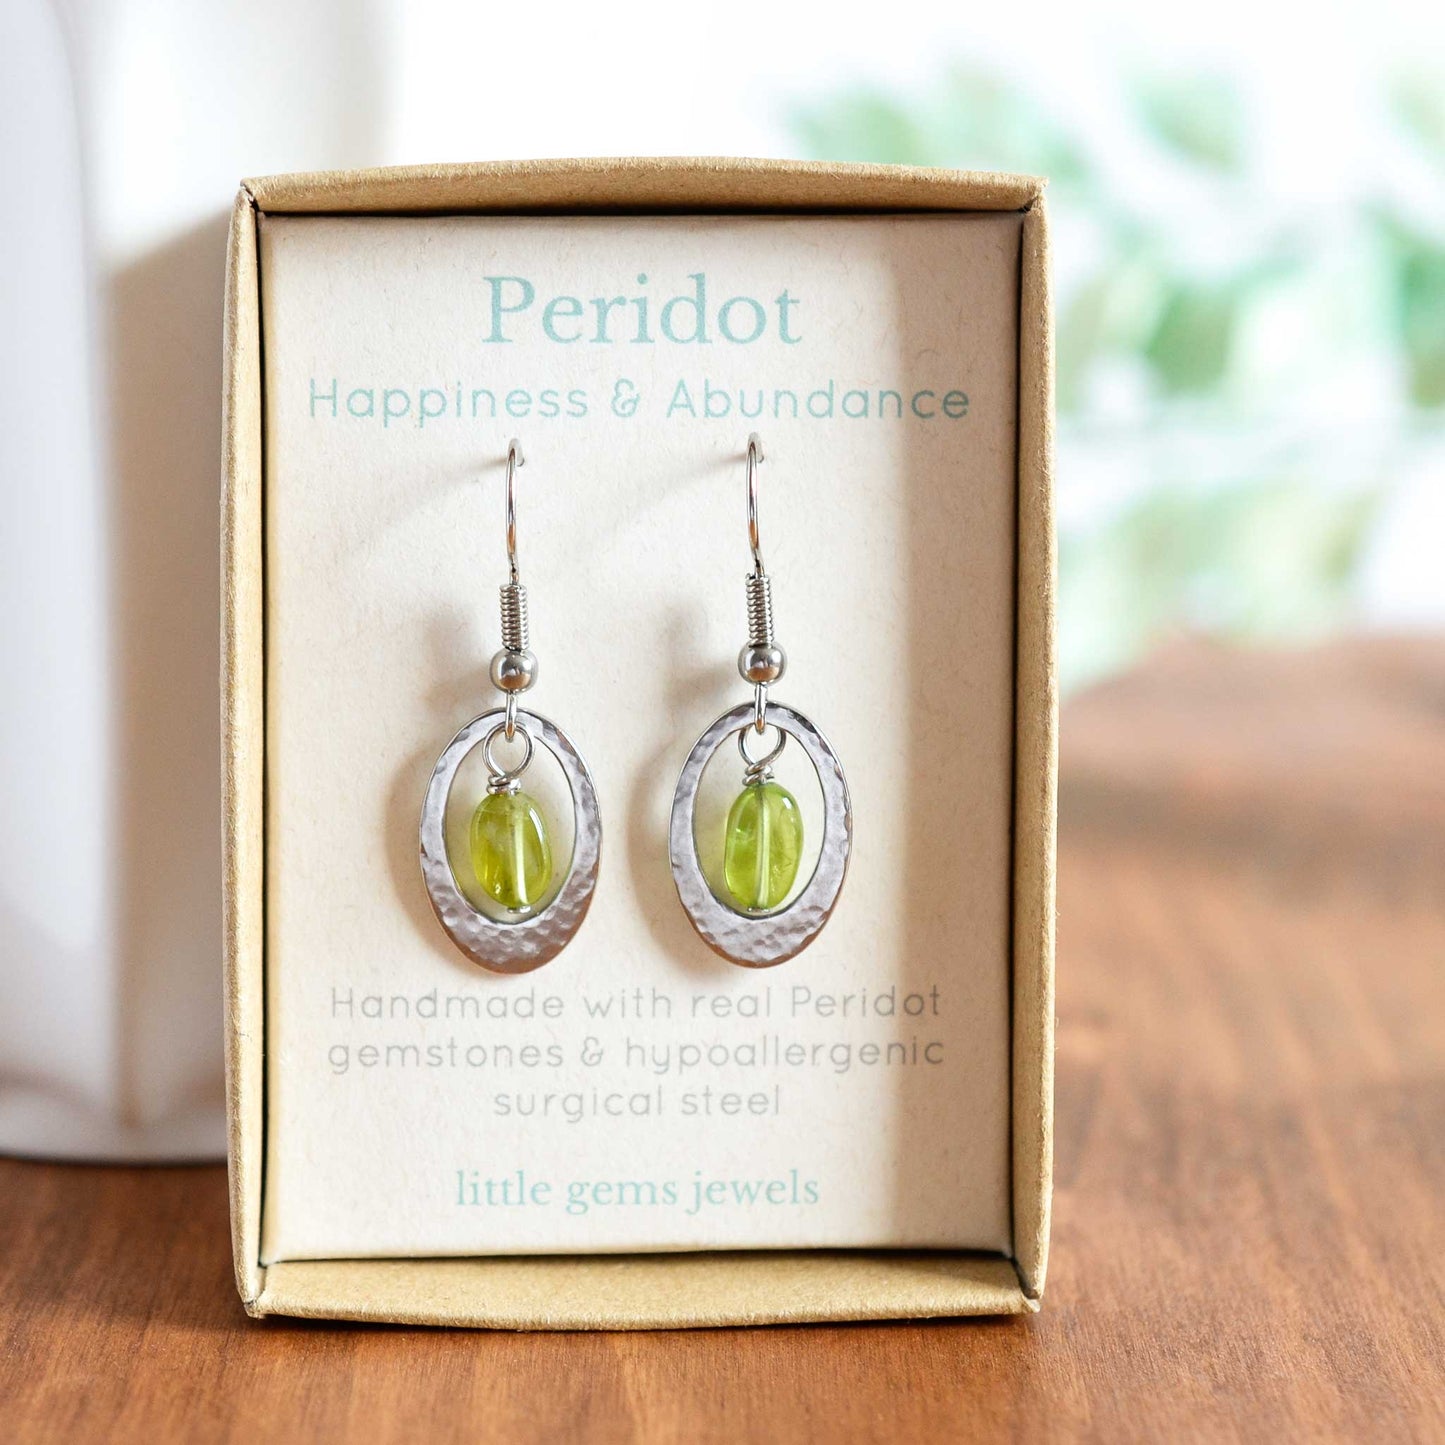 Peridot drop earrings in eco friendly gift box